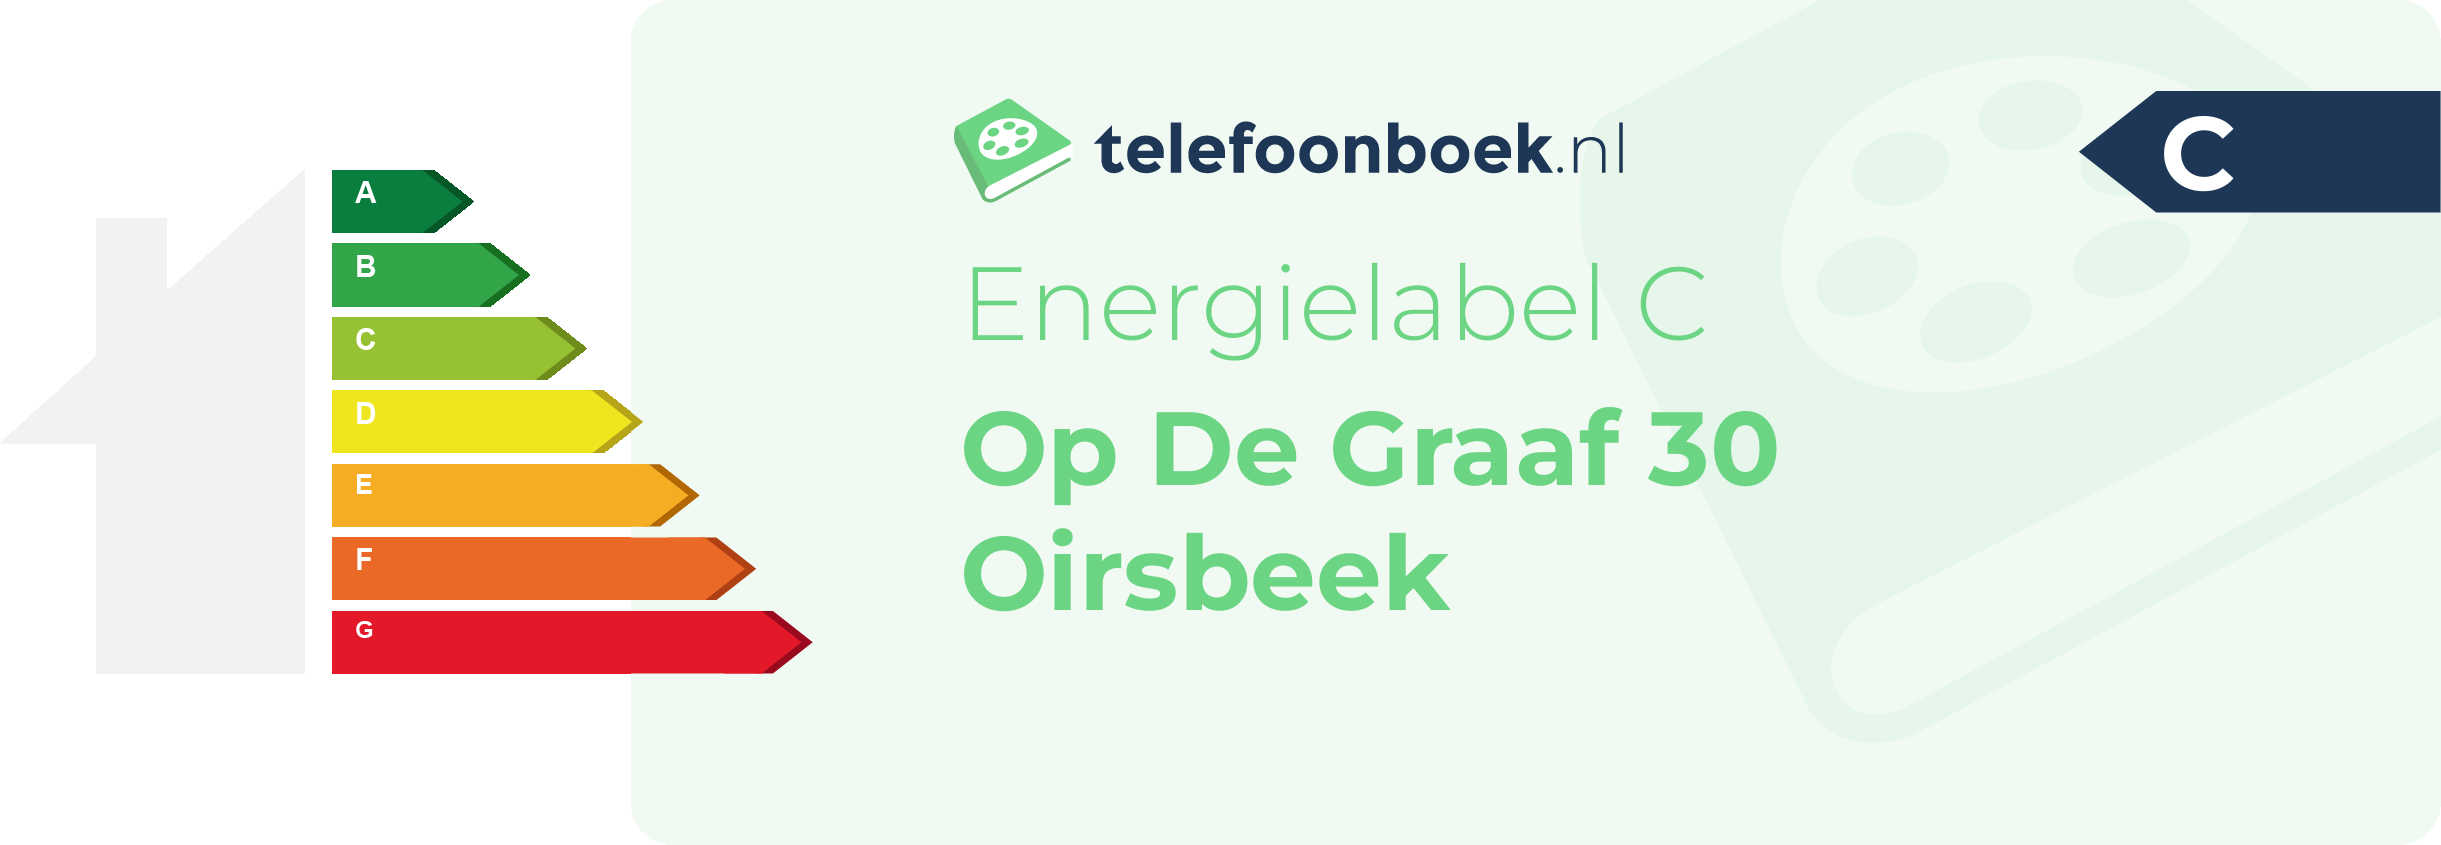 Energielabel Op De Graaf 30 Oirsbeek